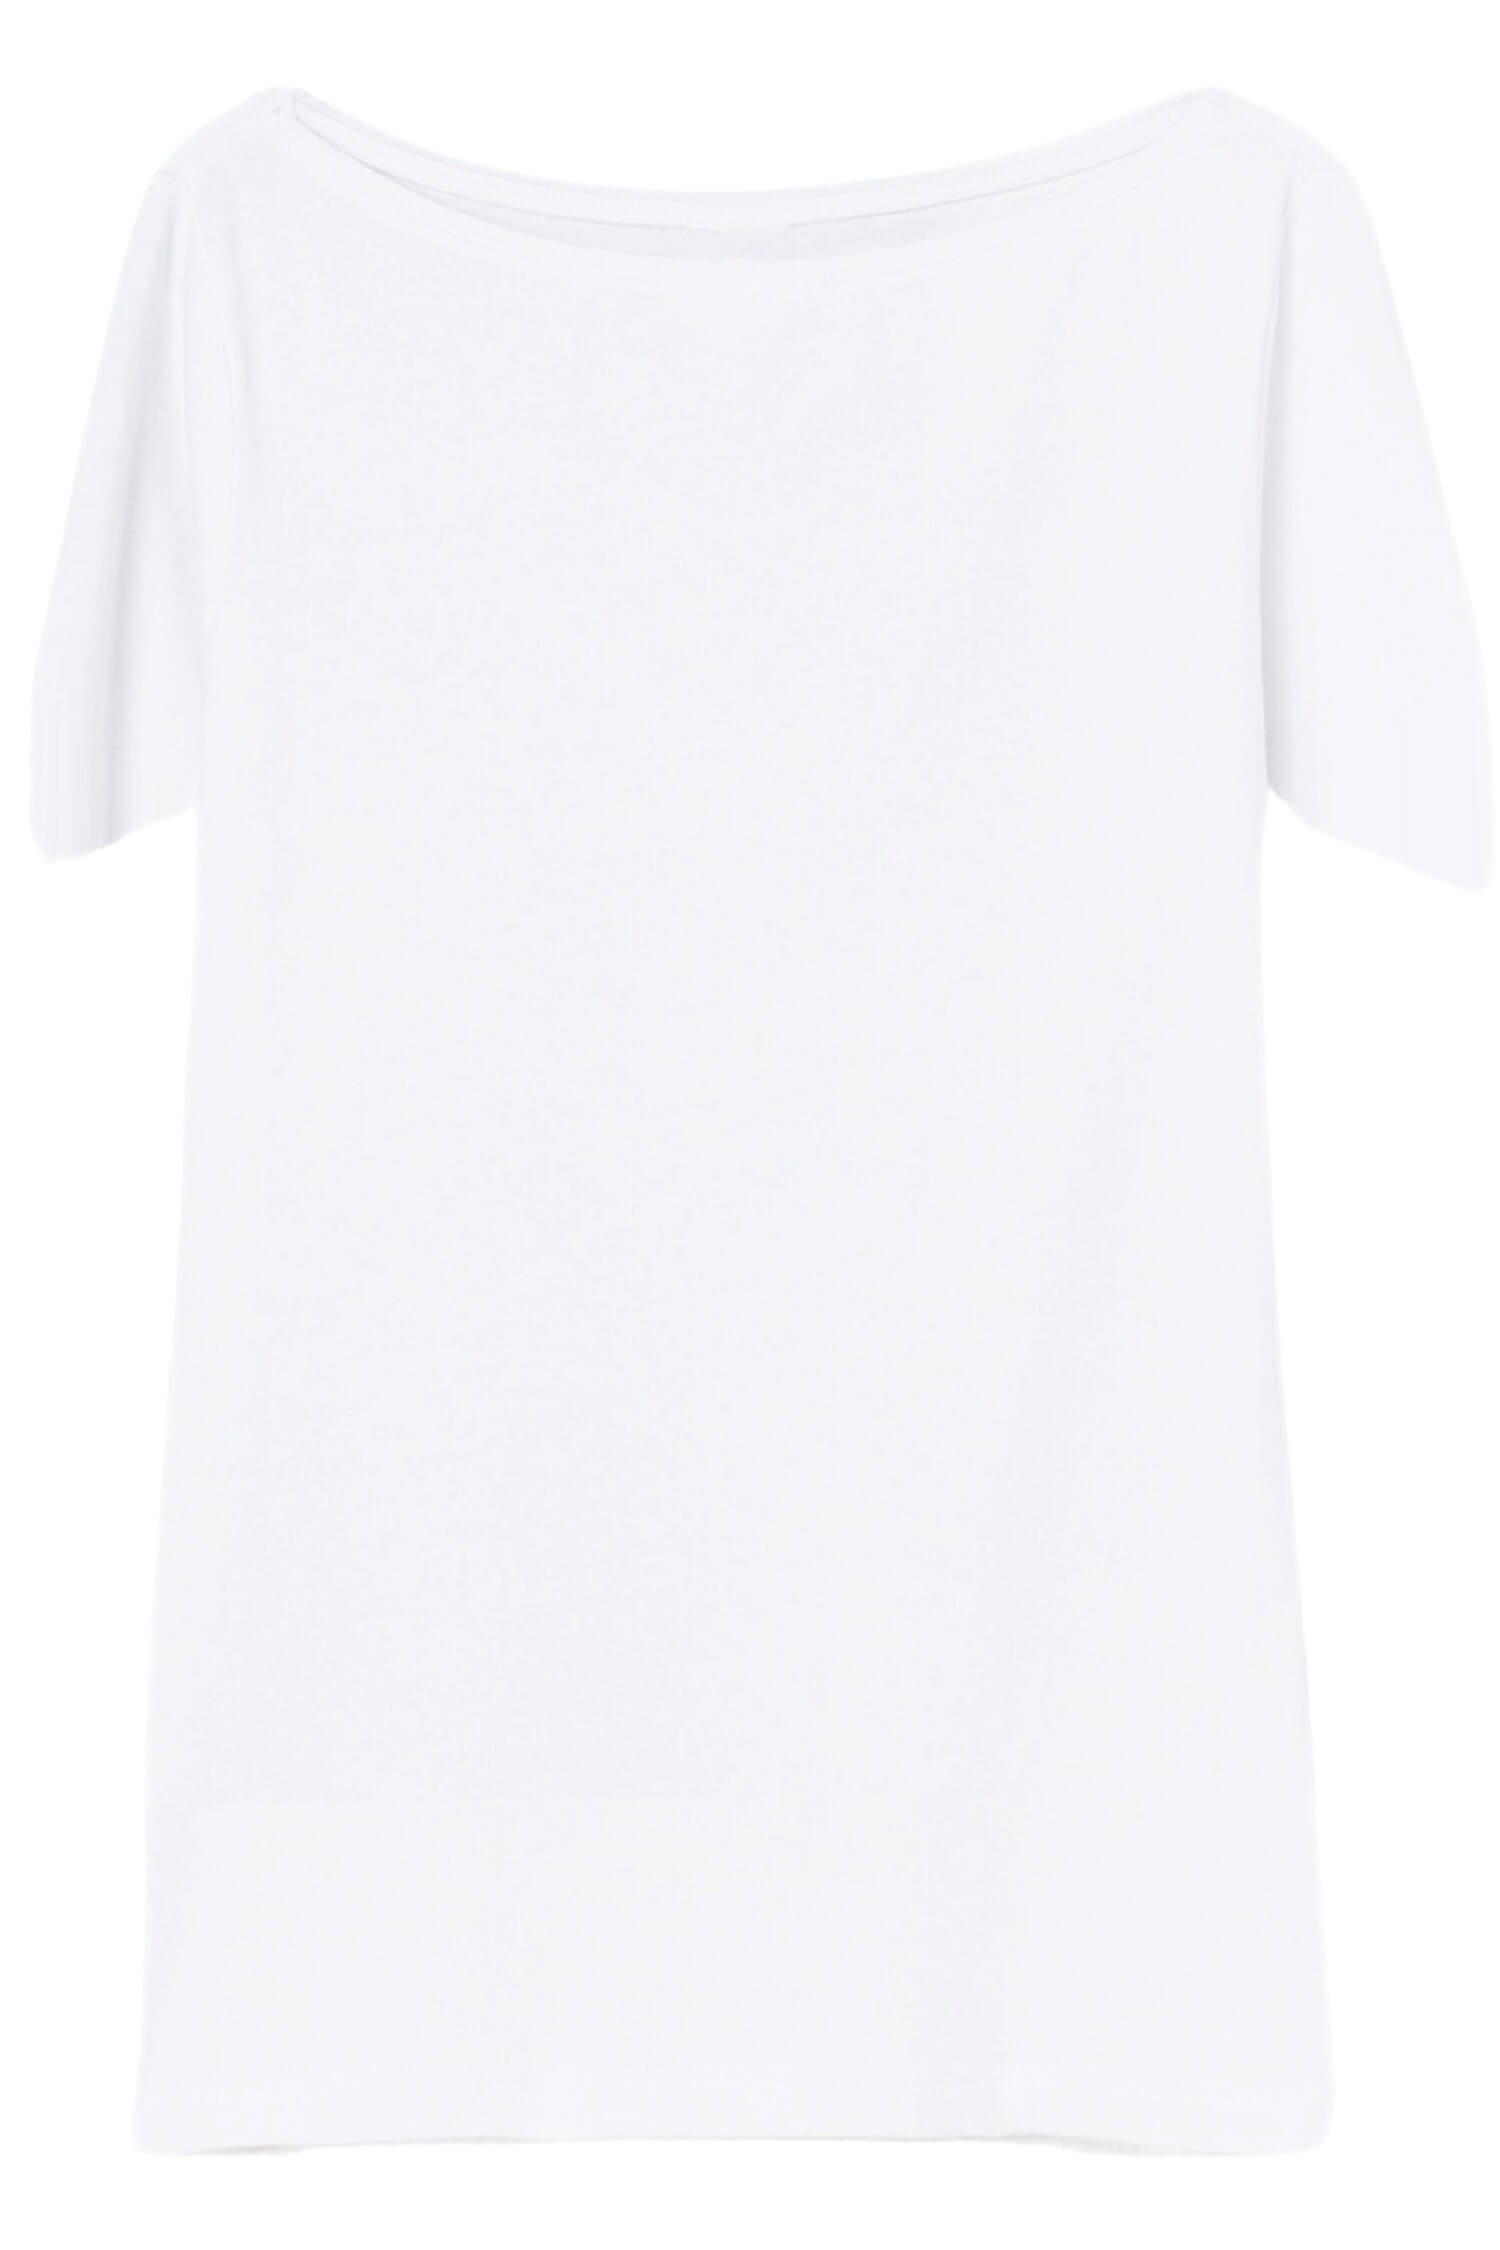 Danica dámské tričko s krátkým rukávem TSK-1005 XL bílá